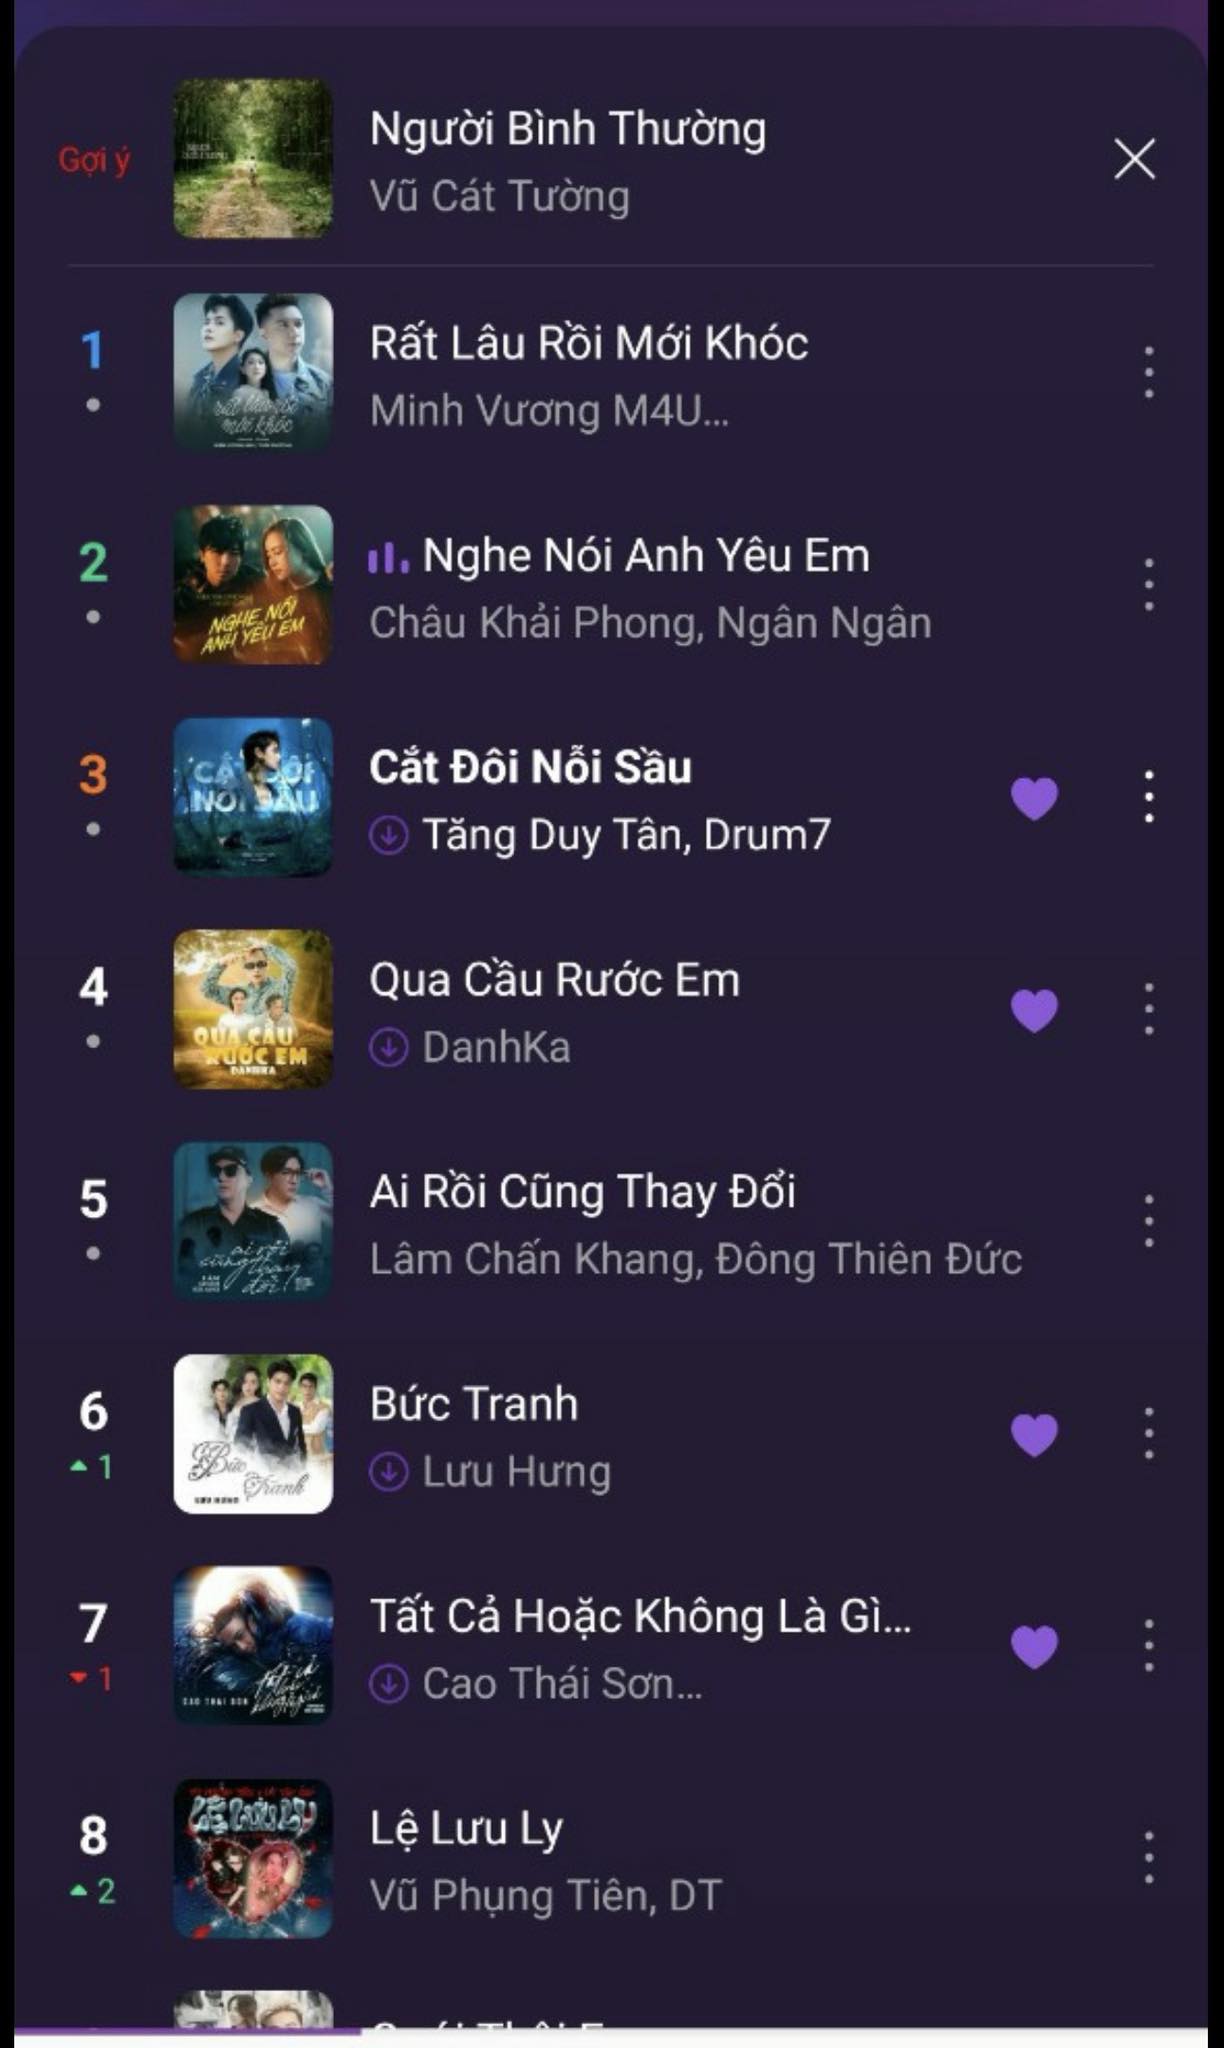 Bài hát 'Bức tranh' của Lưu Hưng lọt top bài hát thịnh hành trên BXH nhạc Việt